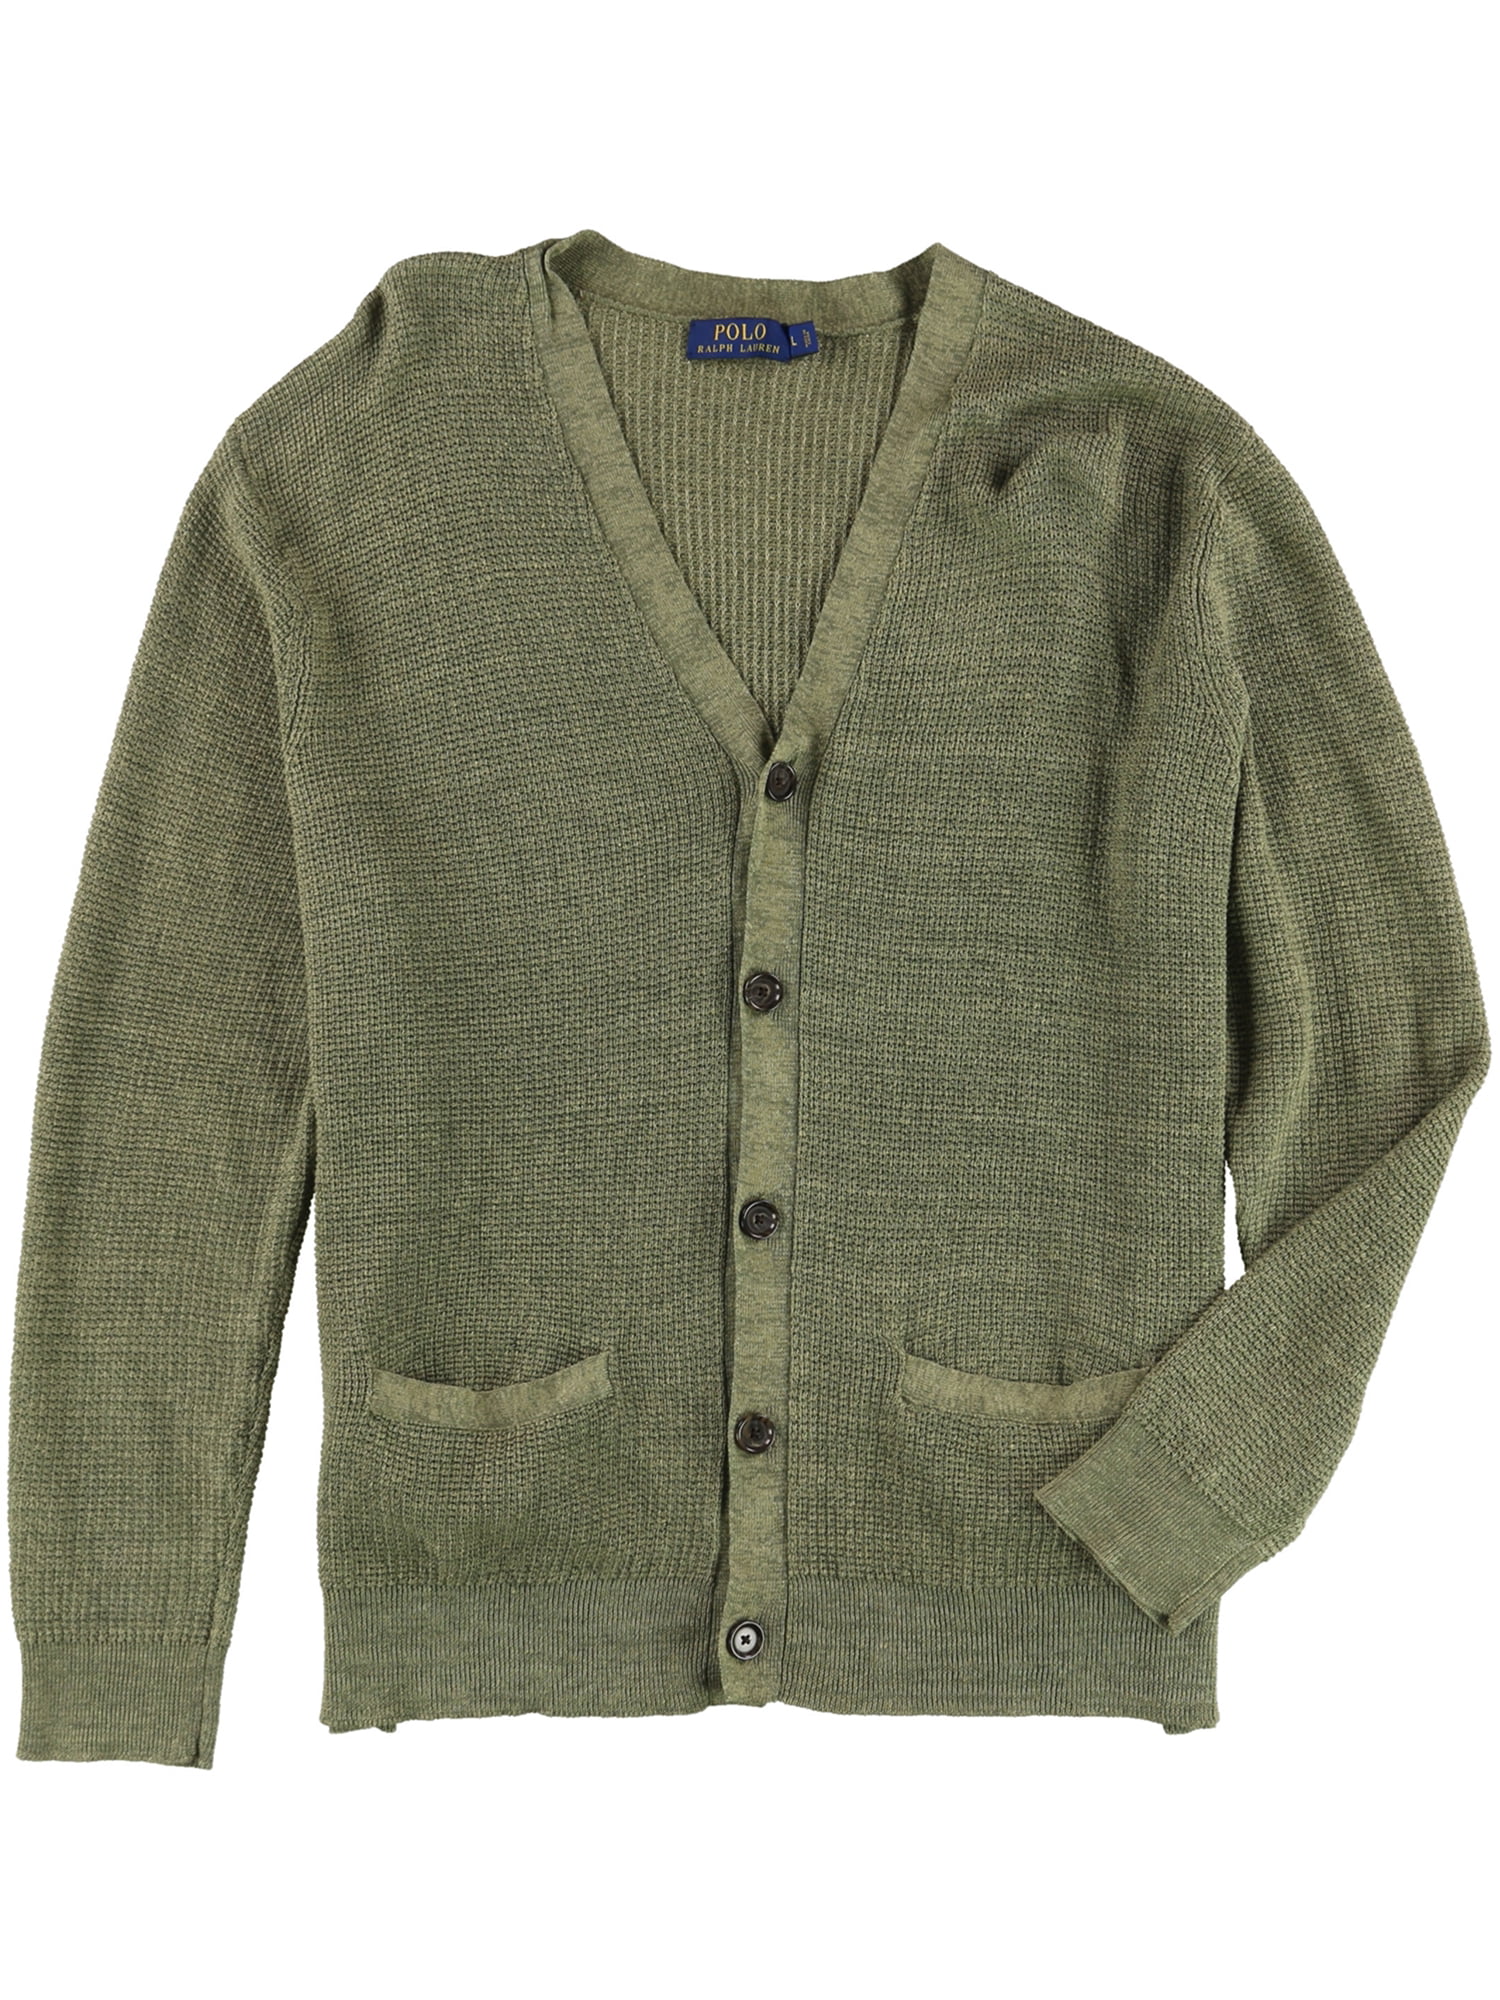 Ralph Lauren Mens Knit Cardigan Sweater turfolive 2XL | Walmart Canada